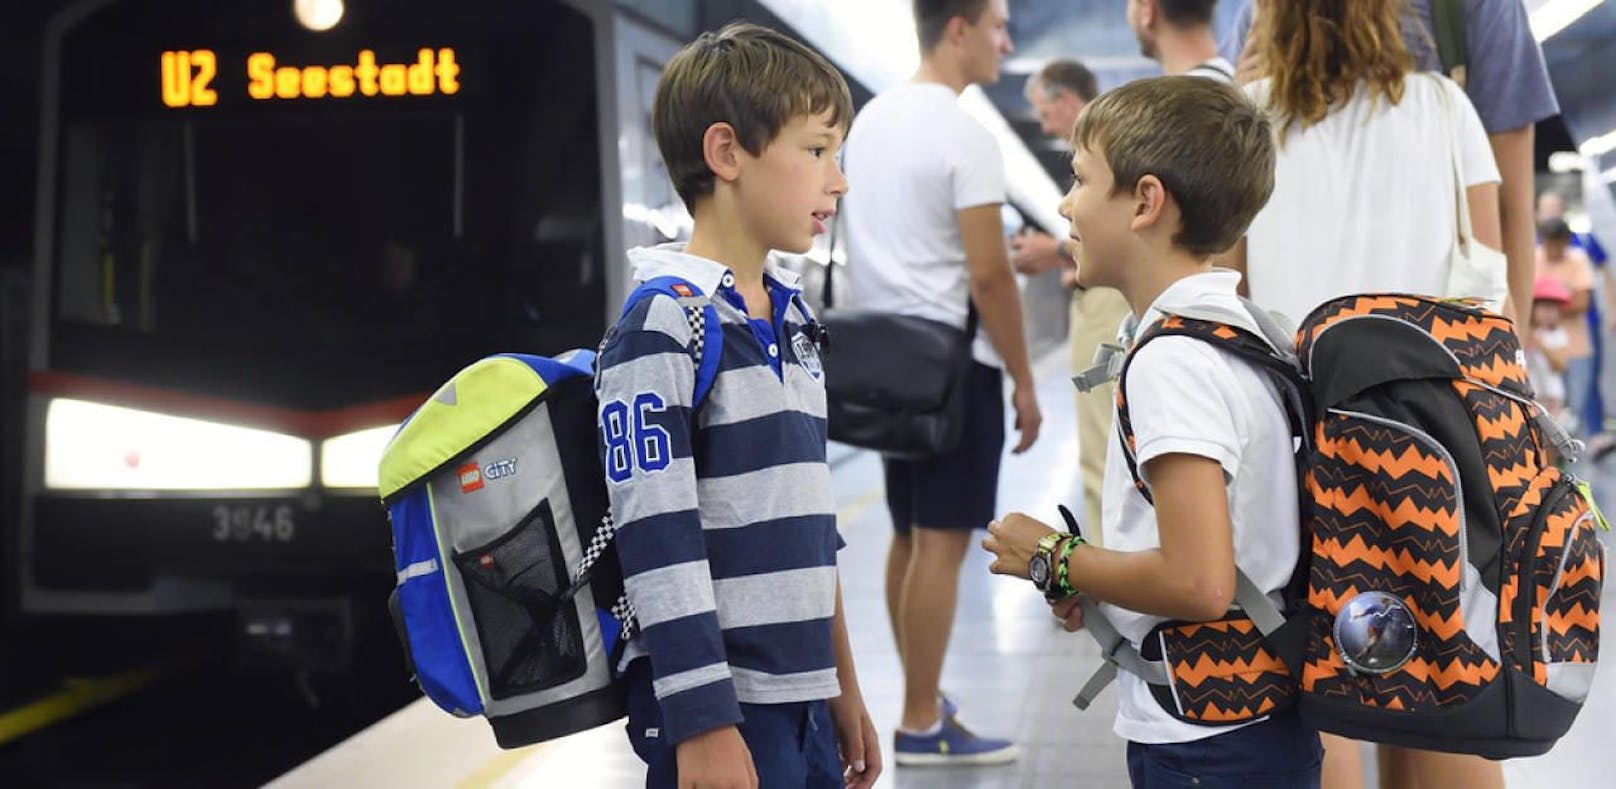 Rund 2,5 Millionen Fahrgäste nutzen die Wiener Linien täglich, darunter auch viele Schulkinder und Jugendliche.